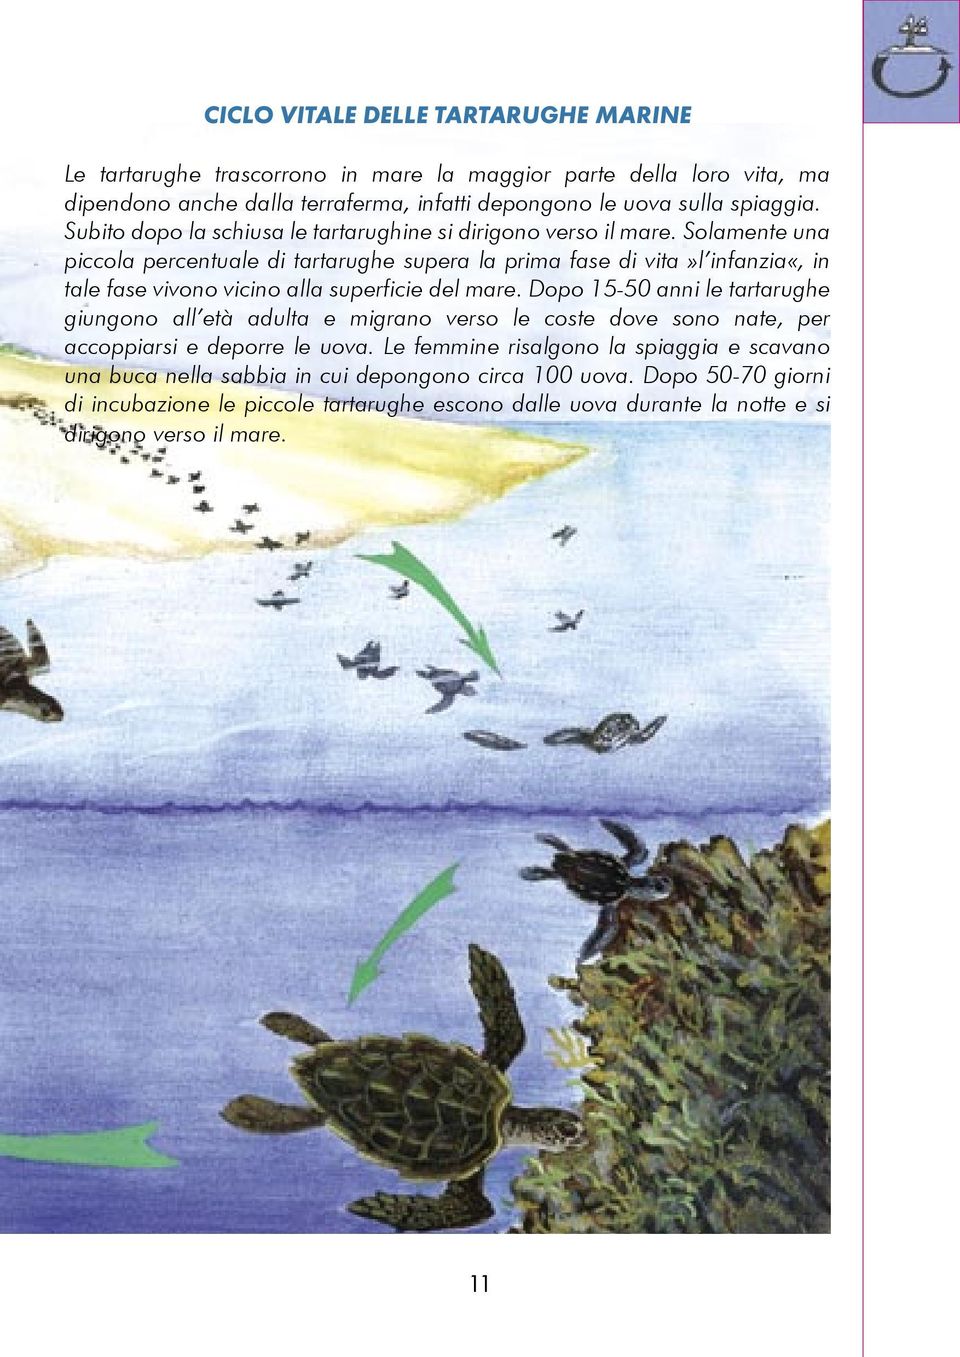 Solamente una piccola percentuale di tartarughe supera la prima fase di vita»l infanzia«, in tale fase vivono vicino alla superficie del mare.